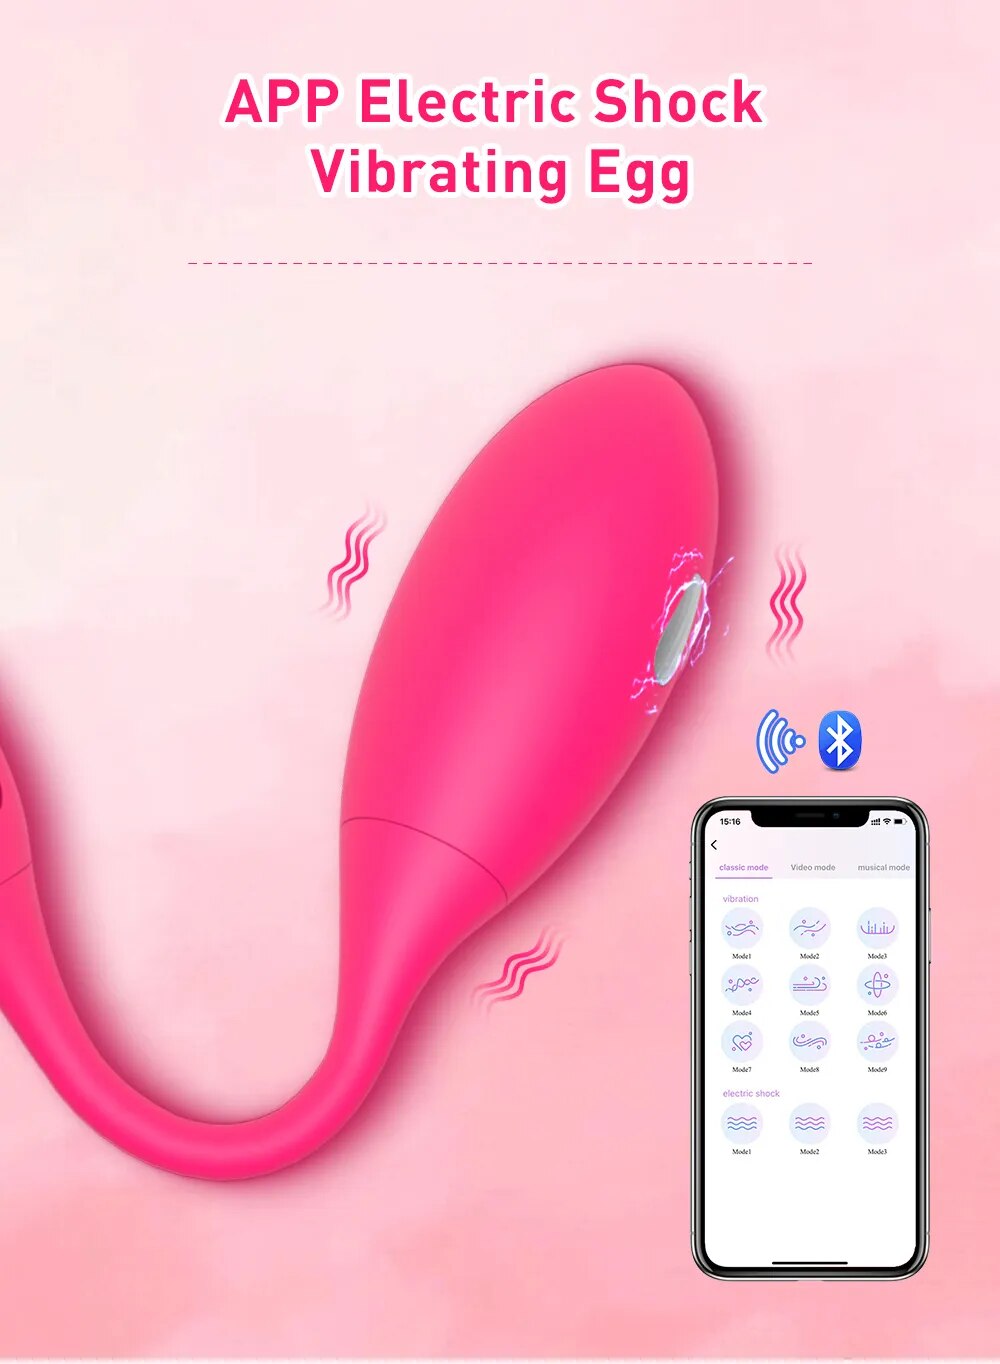  Shop bán Trứng rung sốc điện Levett điều khiển từ xa qua app bluetooth giá tốt